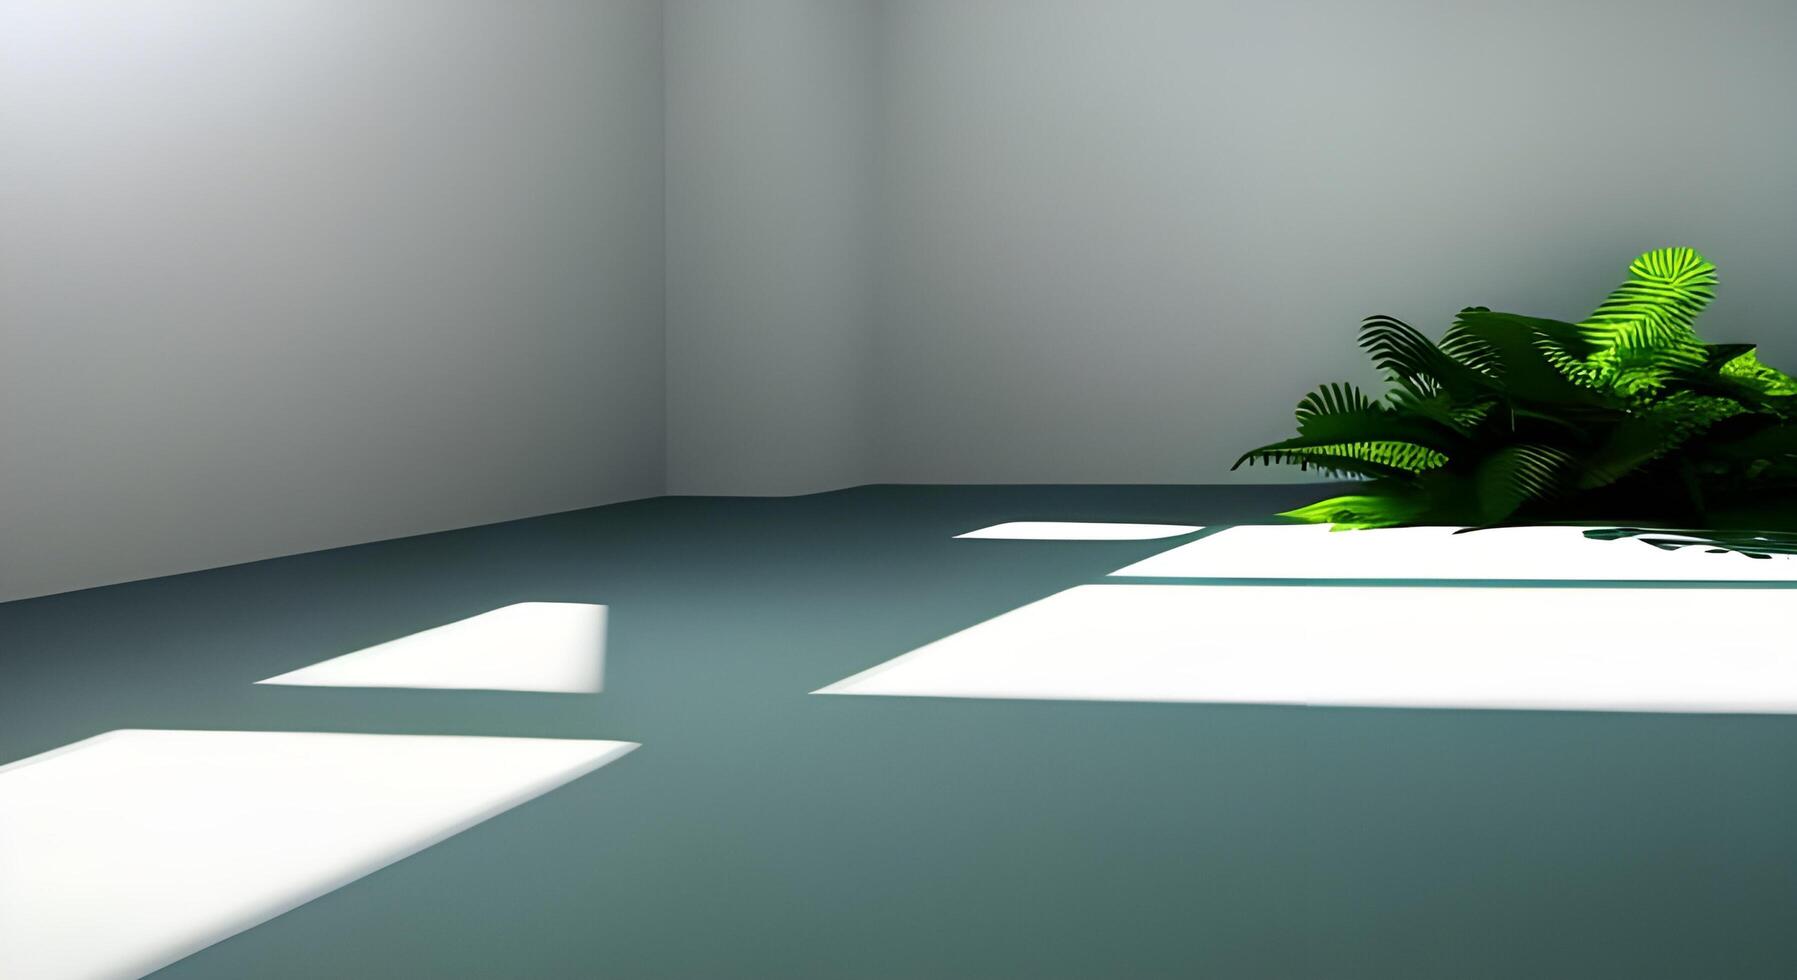 wit 3d geven kamer met natuurlijk groen zonlicht en bladeren schaduw. vloer, ruimte, schaduw ai gegenereerd inhoud foto